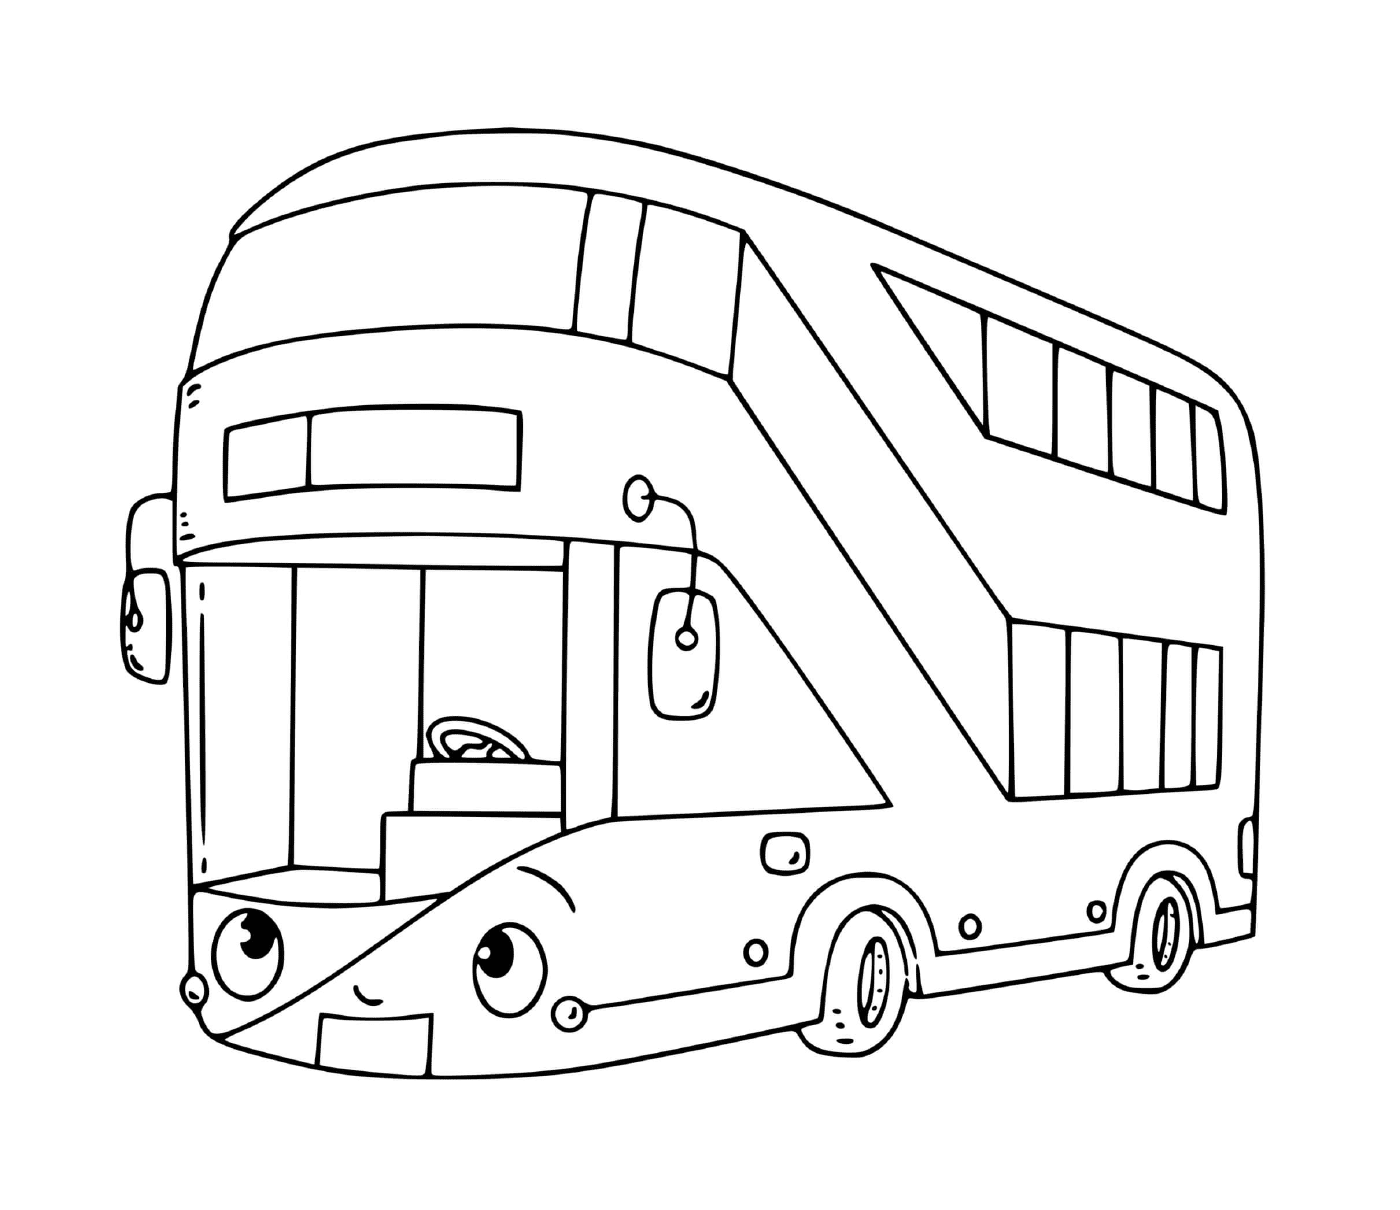   Un bus à deux étages pour le transport 